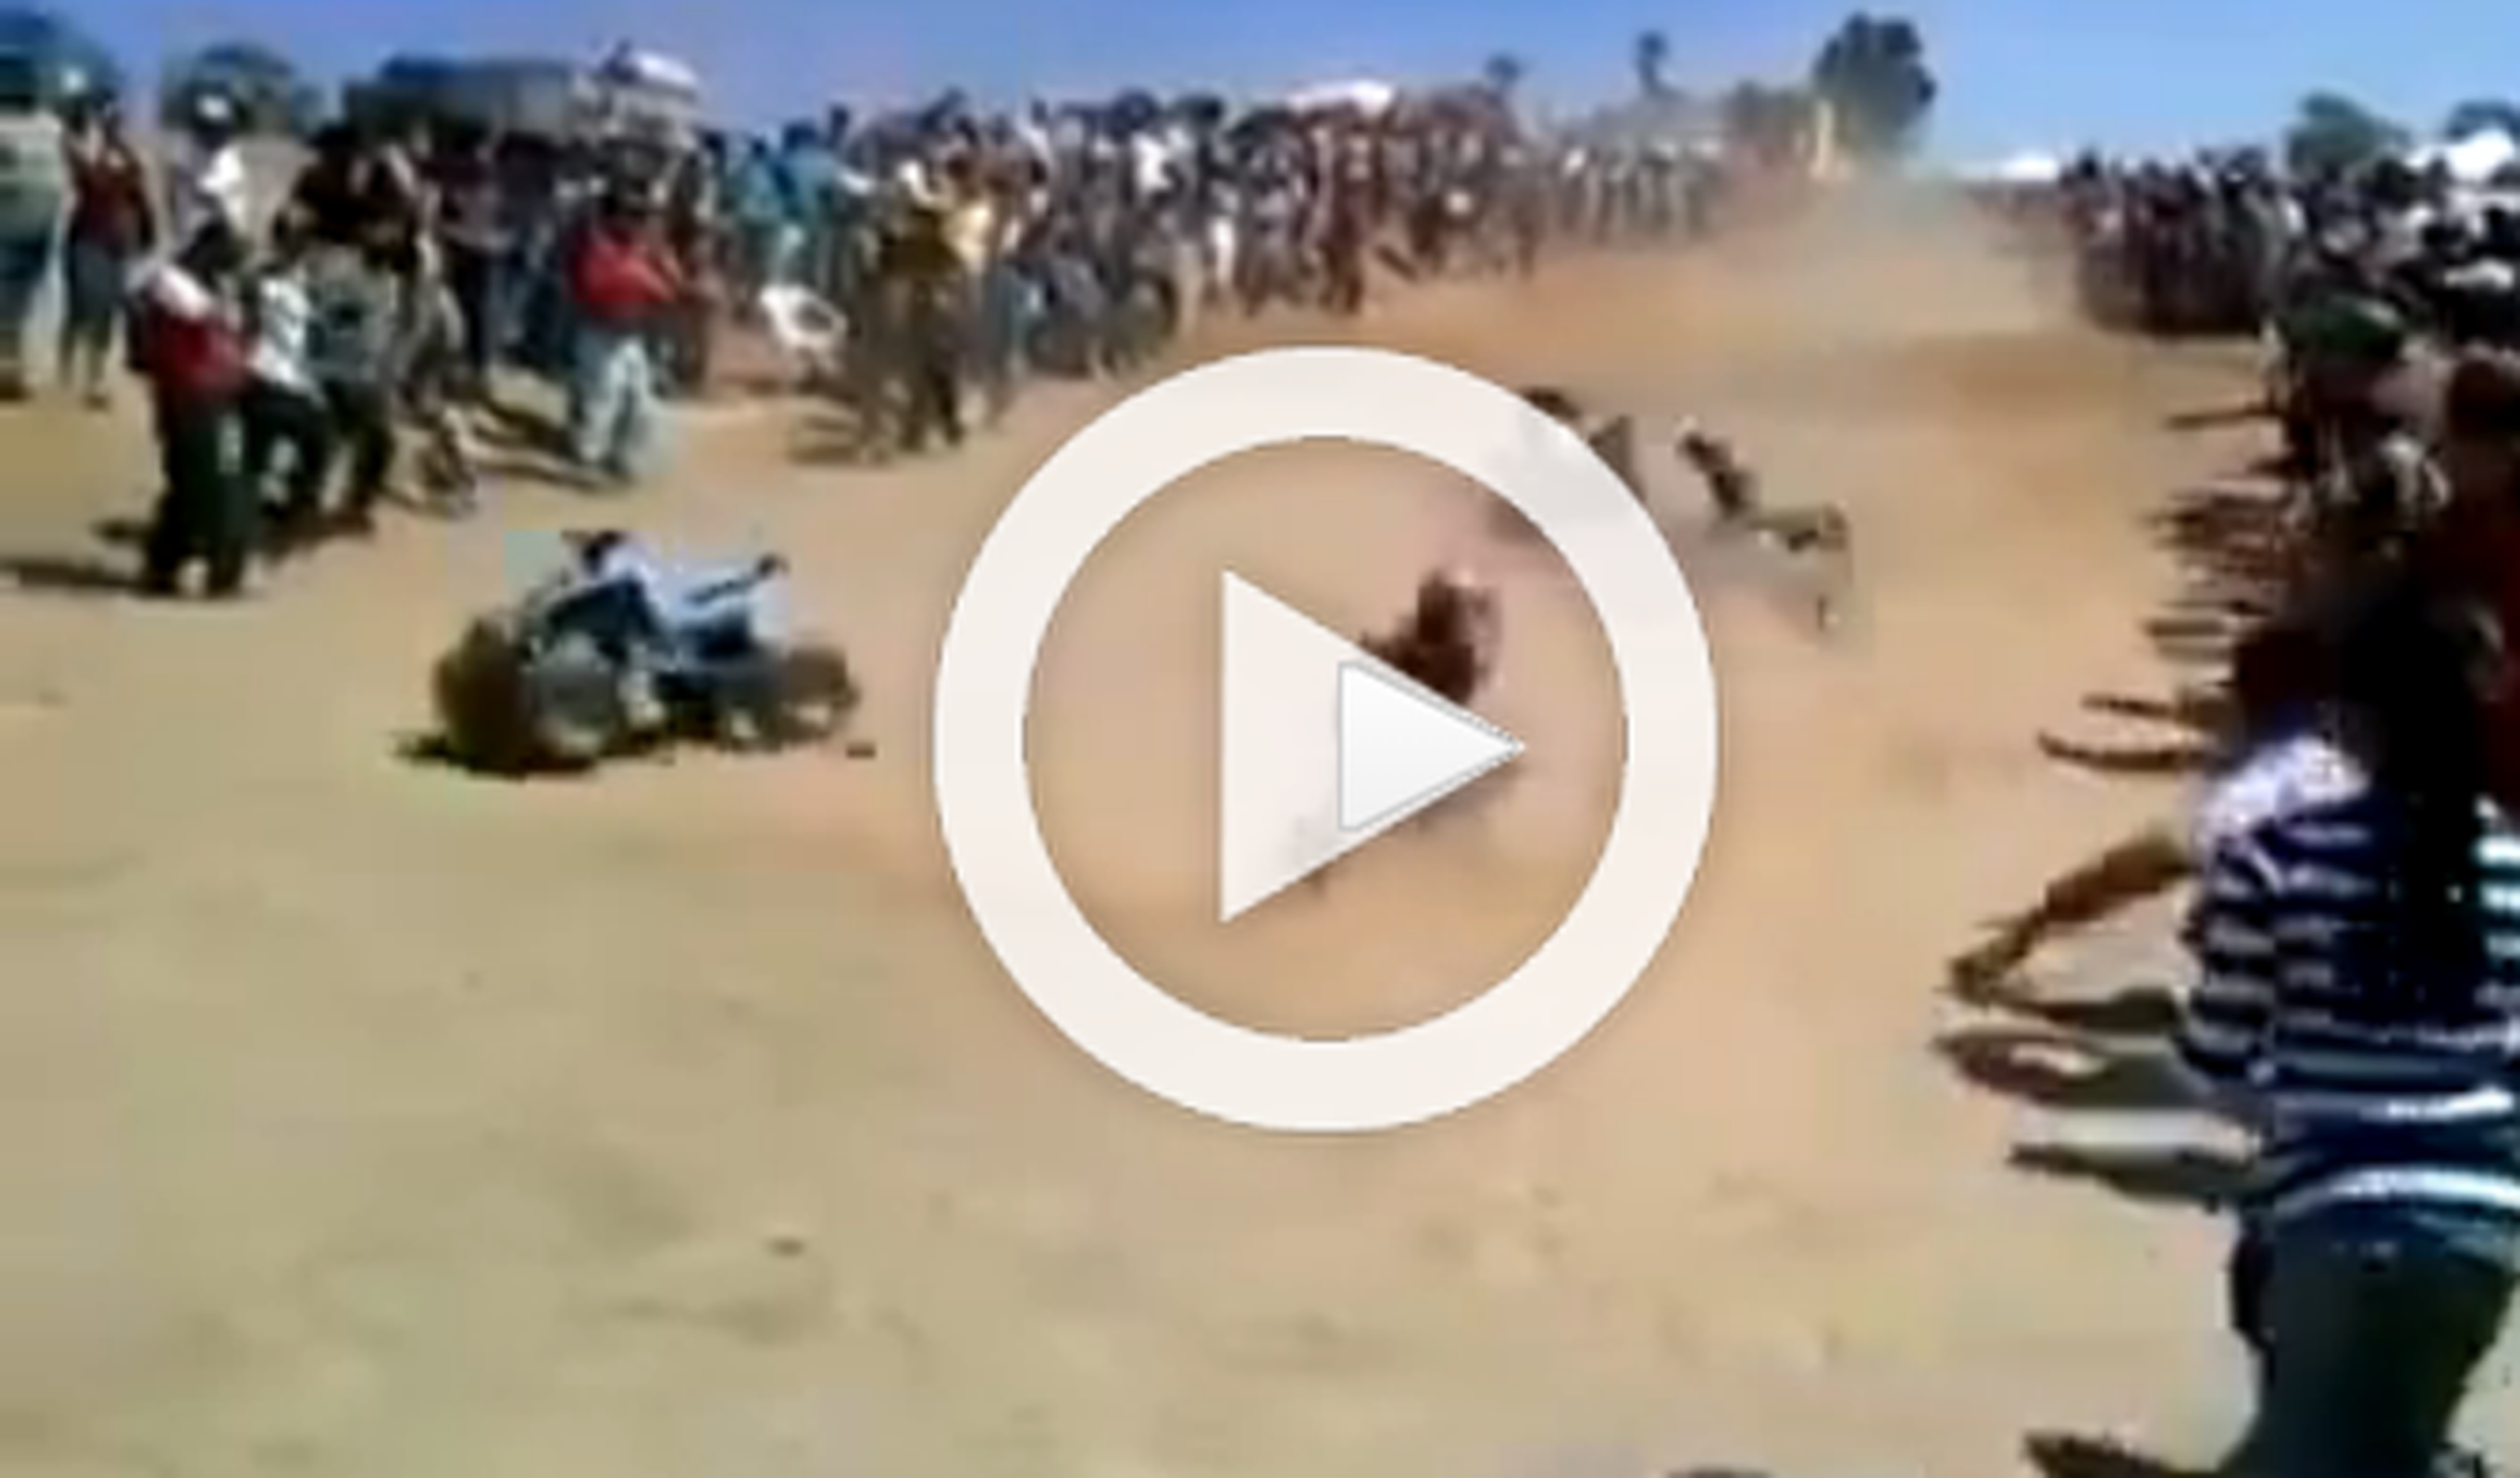 Vídeo: espectacular caída durante una carrera de quads